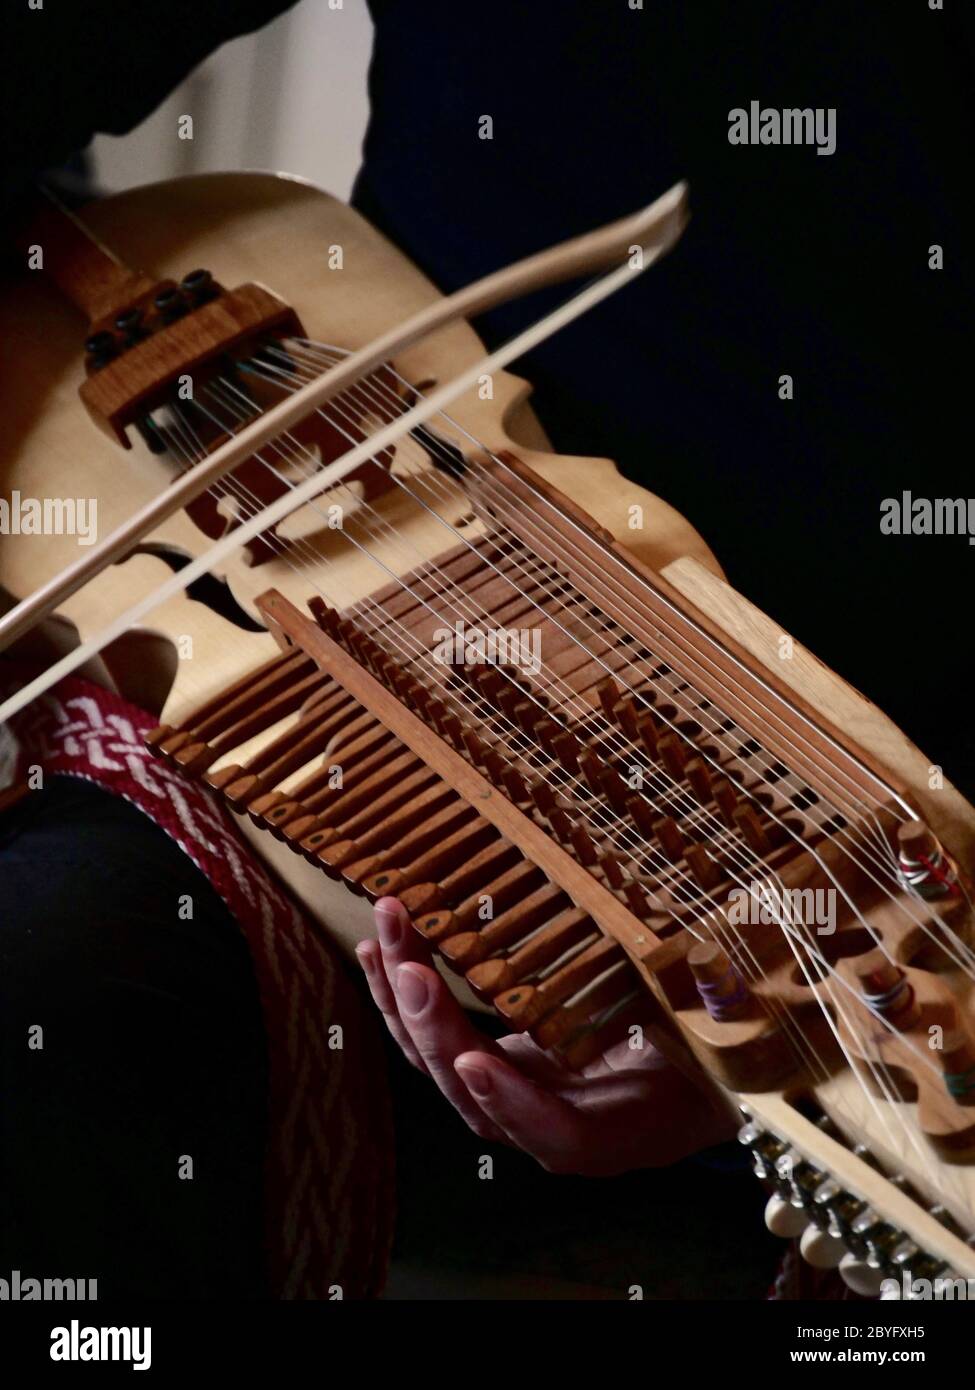 nyckelharpa concetto di musica folk, barocca e classica strumenti musicali antichi d'archi artigianali Foto Stock